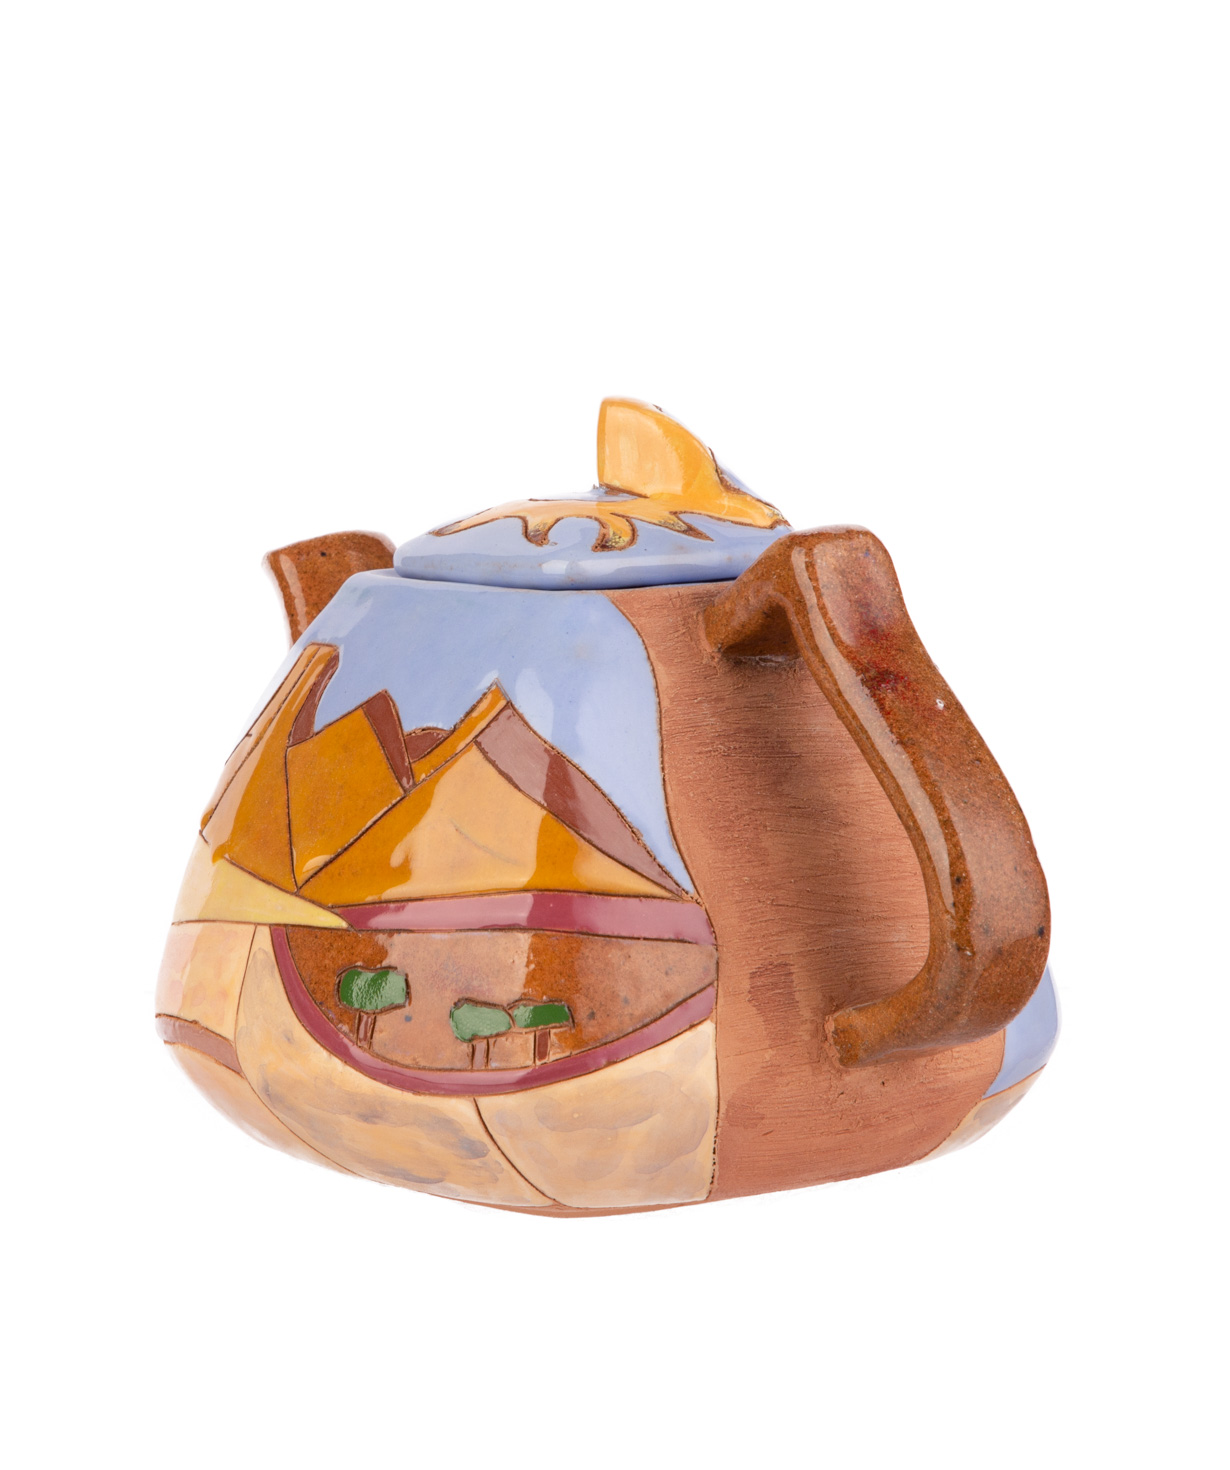 Teapot `Nuard Ceramics` Saryan